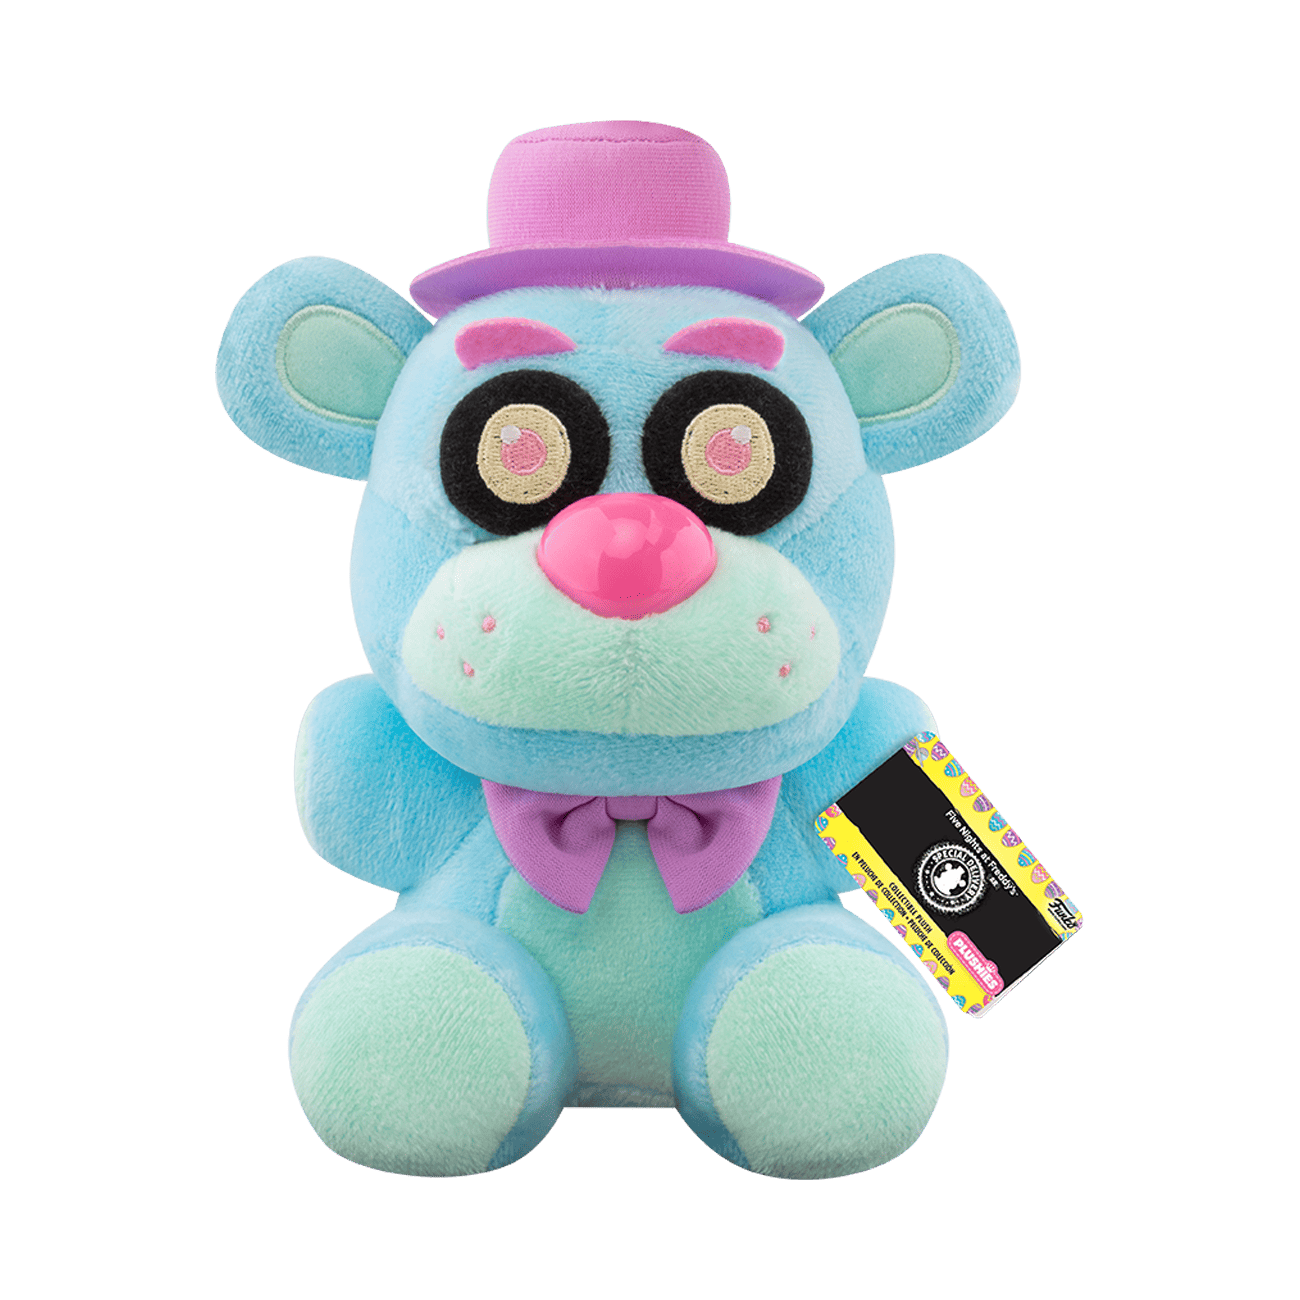 Toy Freddy - Funko Plush - Five Nights At Freddy's